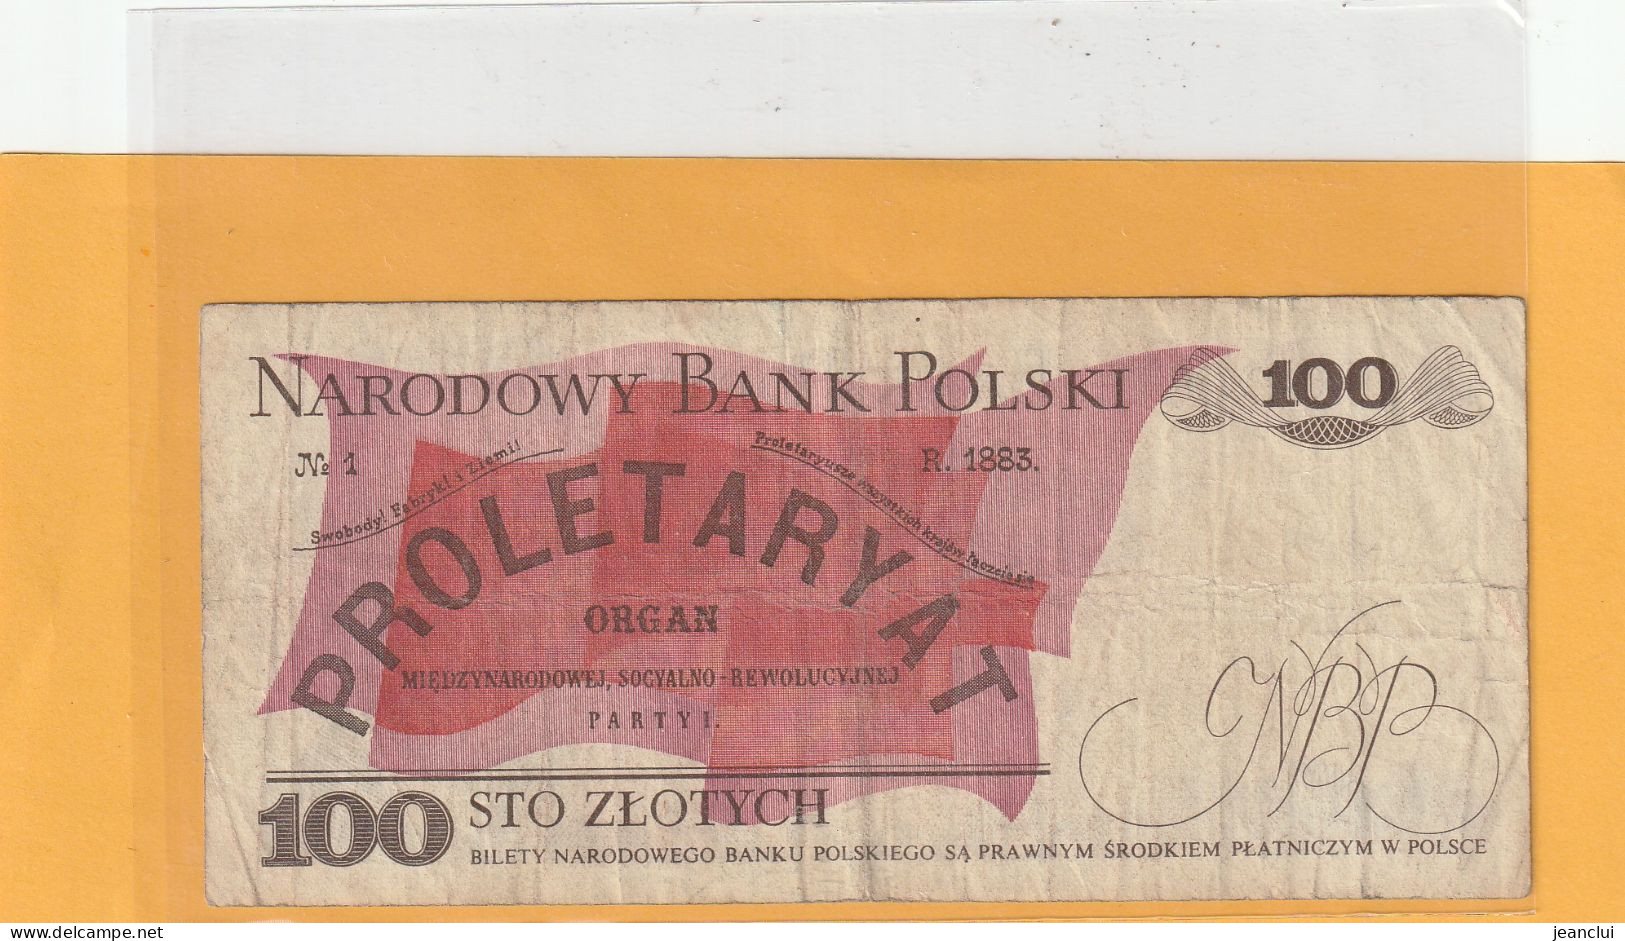 NARODOWY BANK POLSKI . 100 ZLOTYCH .  1-12-1988 .  N° RP 2681236 .  2 SCANNES - Pologne